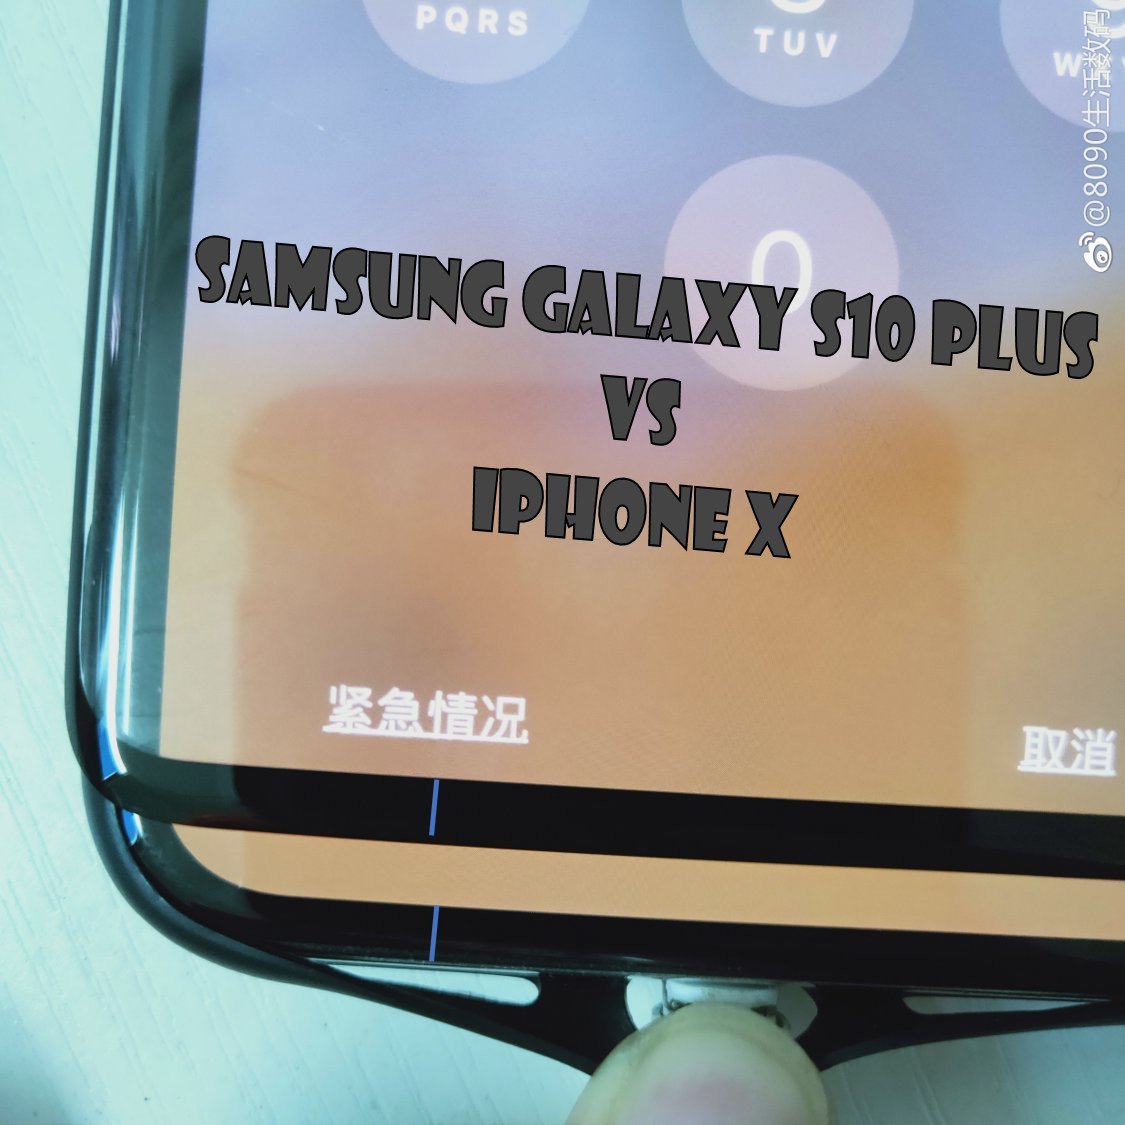 Das Leck der Bildschirmabdeckung bestätigt, dass das Samsung Galaxy S10 Plus ein kleines, niedliches Kinn hat